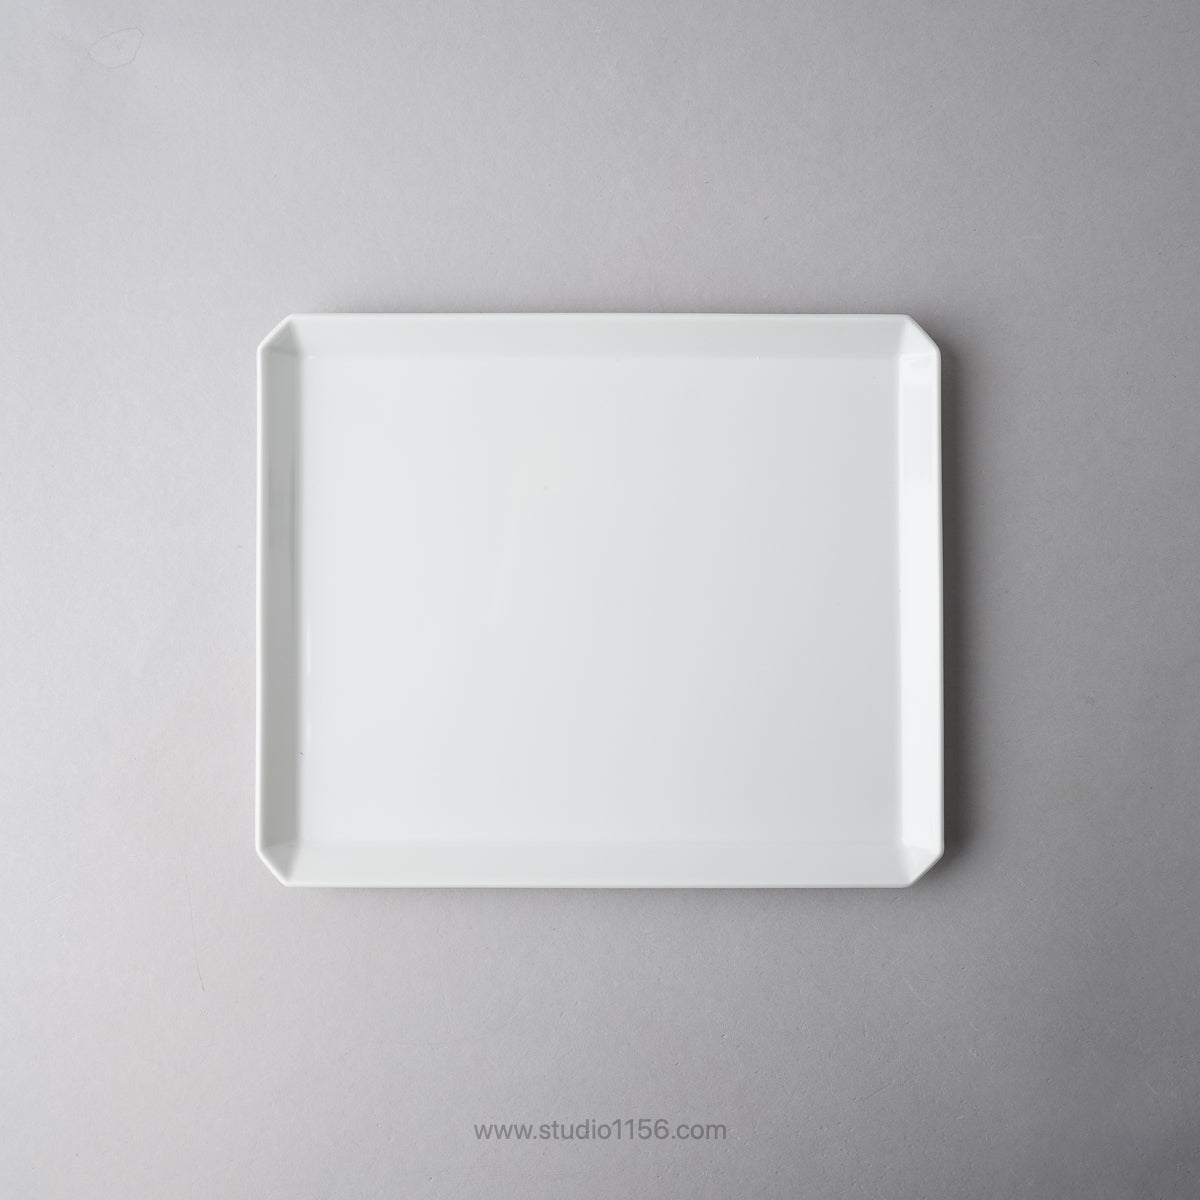 有田焼 スクエアプレート プレーン ホワイト / TY Square Plate Plain White 235 1616 / Arita Japan Studio1156